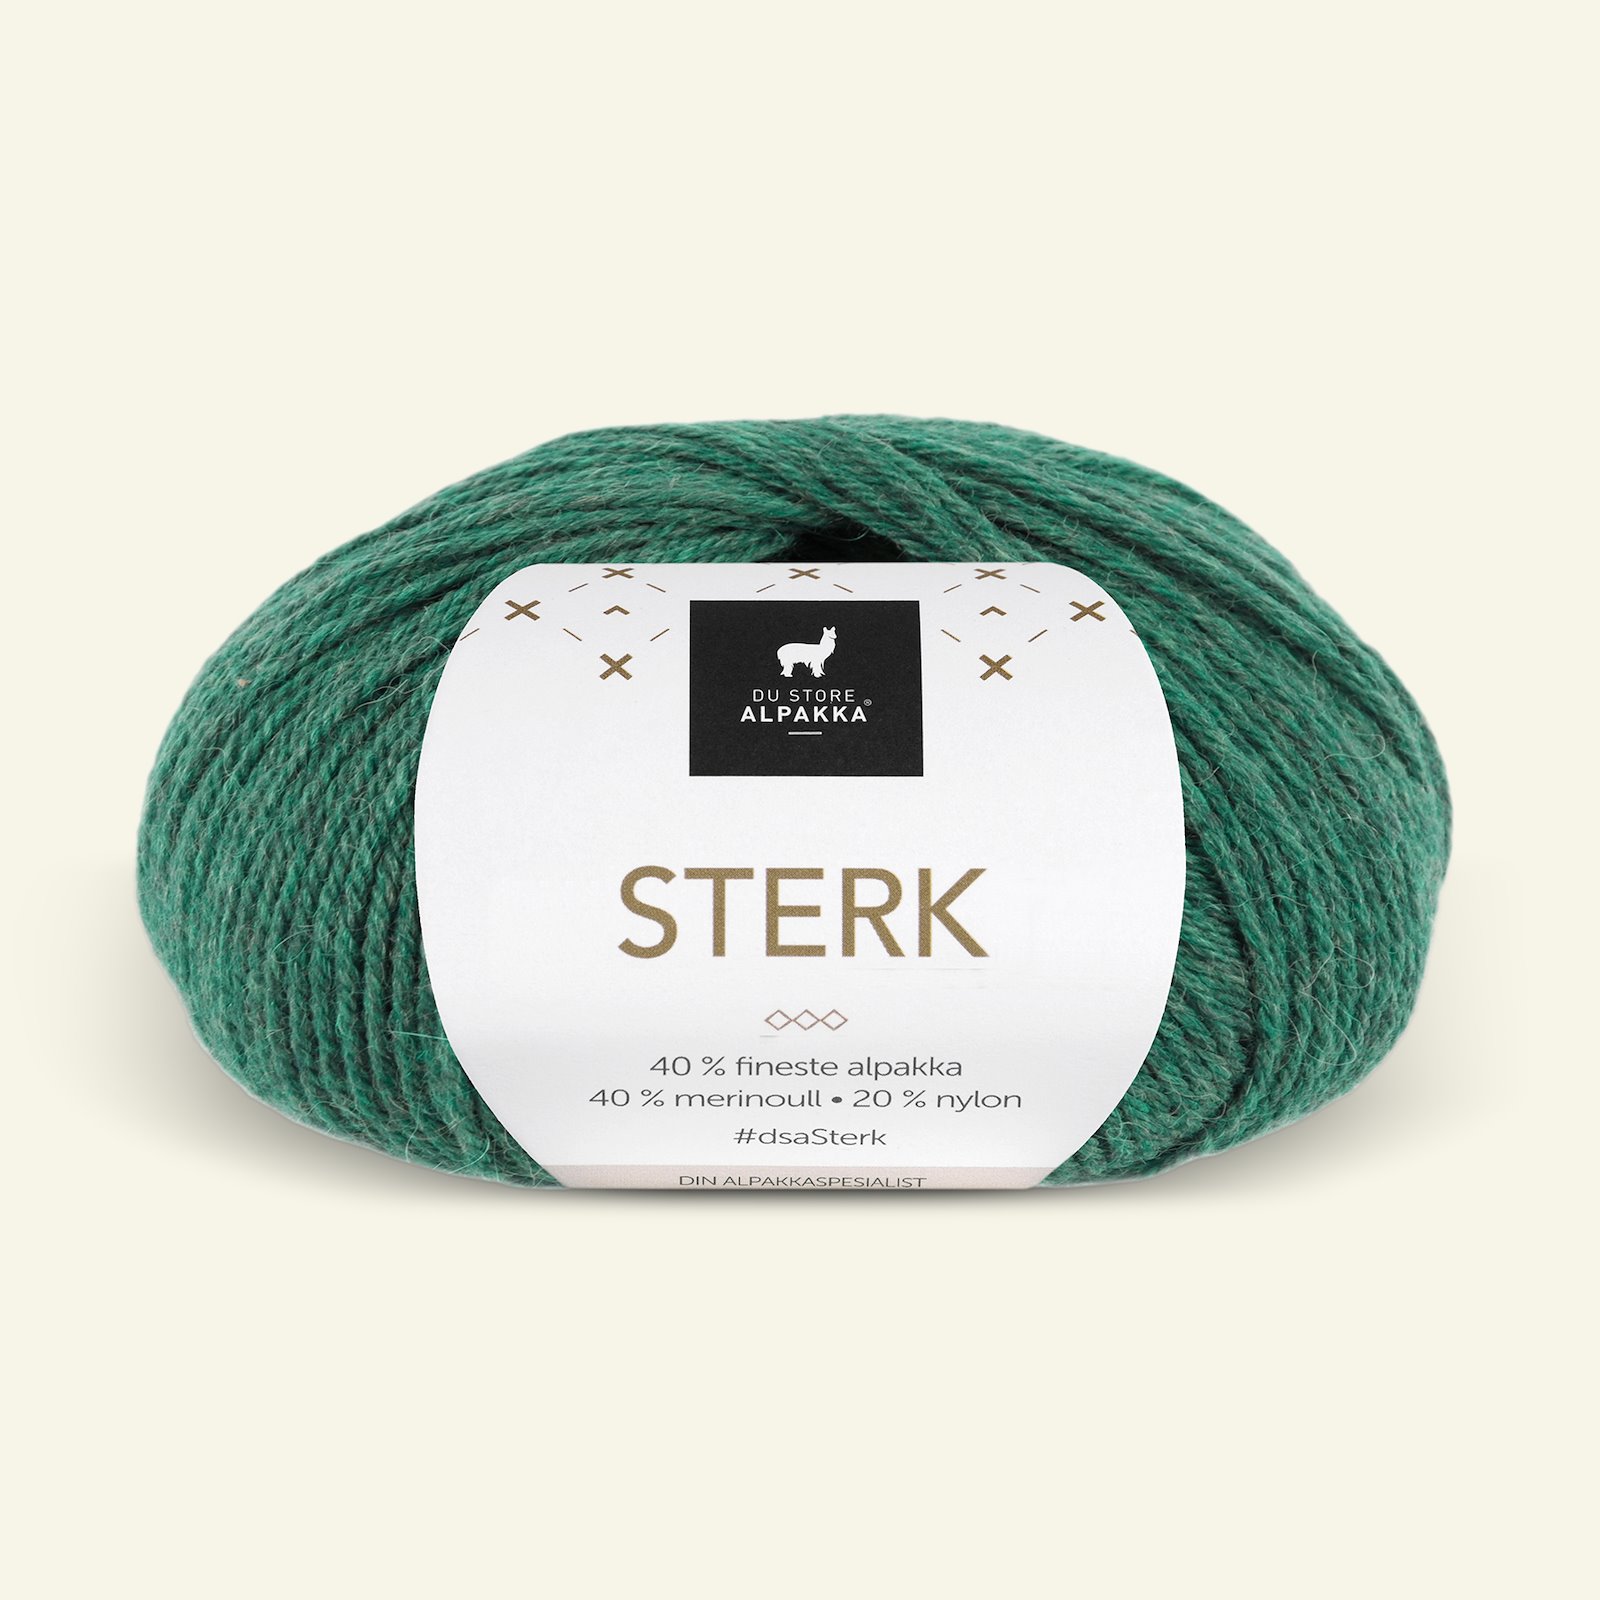 Du Store Alpakka, alpakka merino blandingsgarn "Sterk", grønn melert (888) 90000689_pack